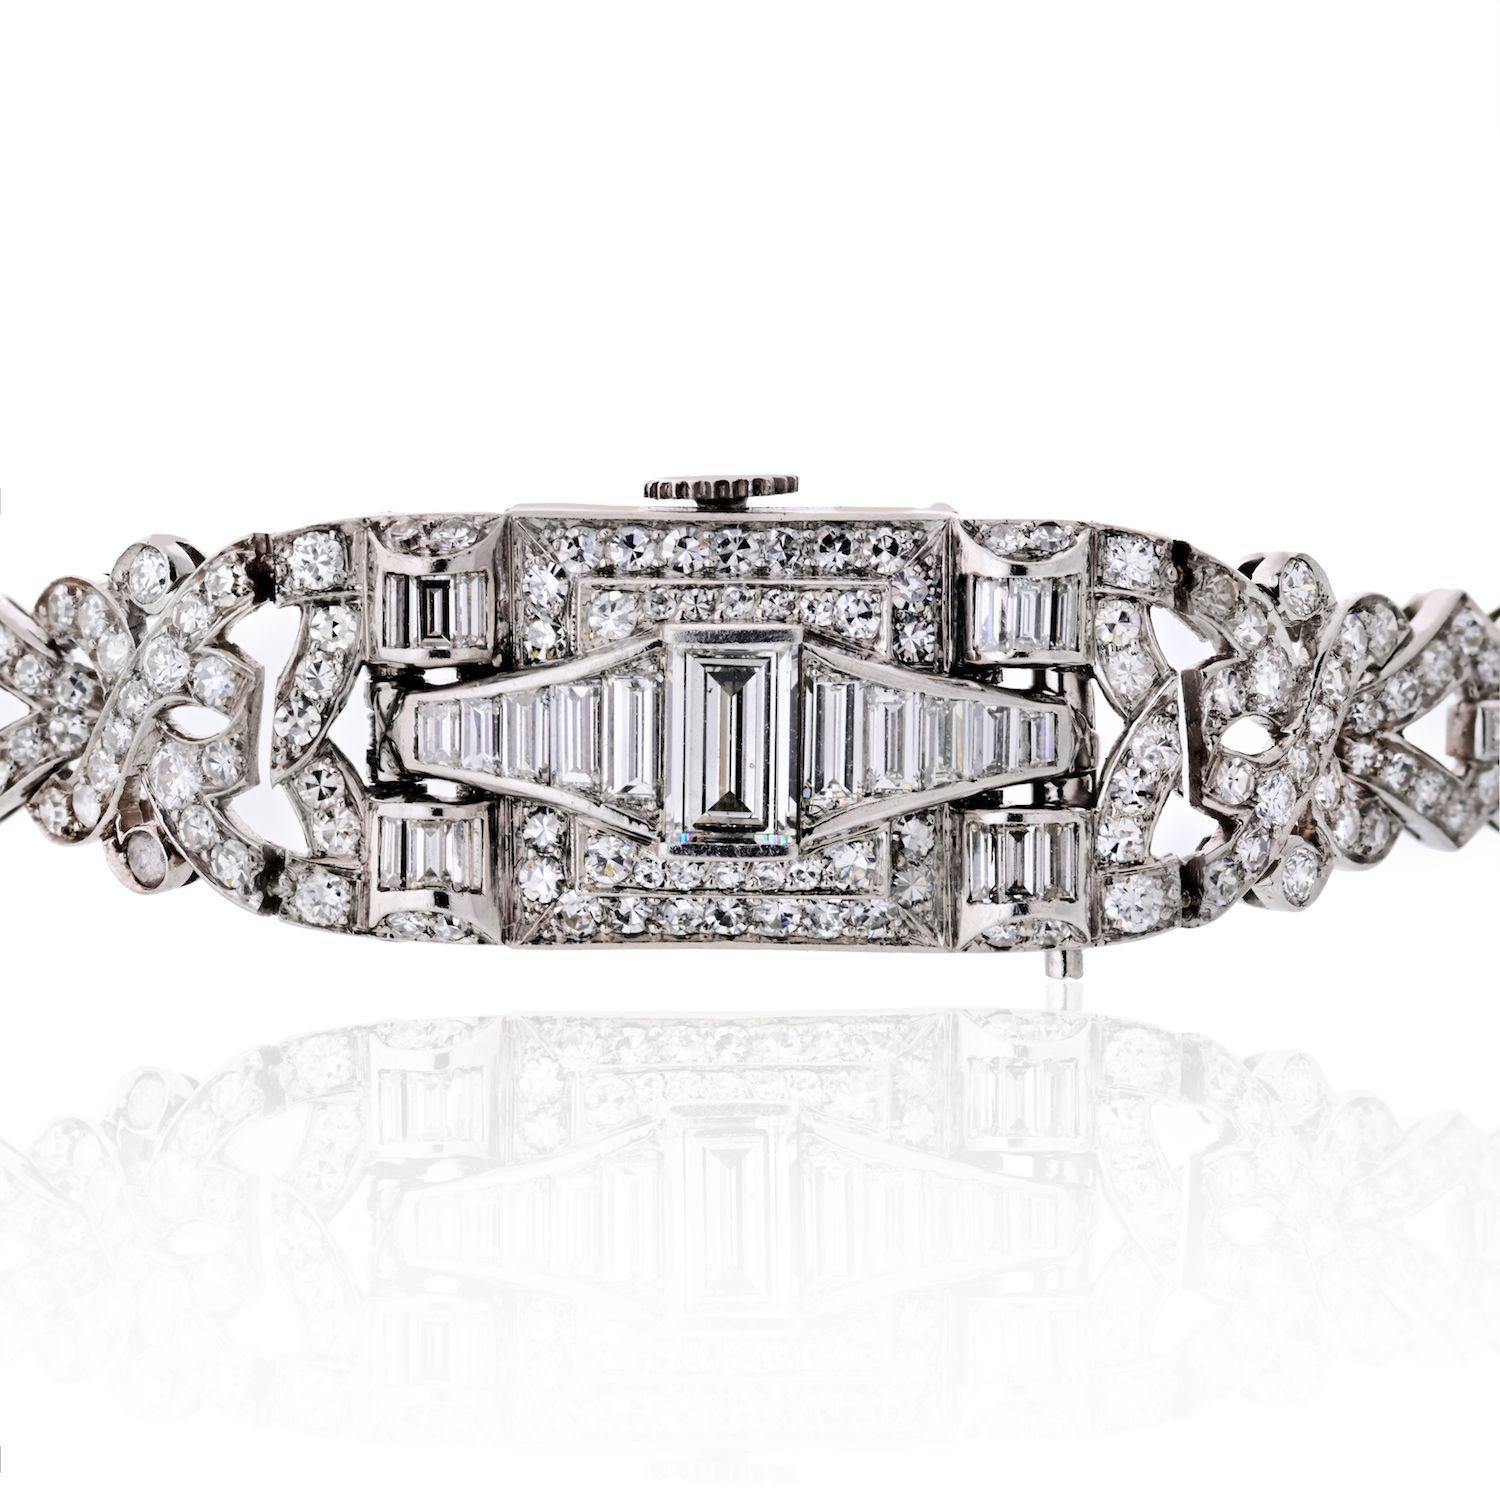 Voici une superbe montre Art déco Glycine Diamond Platinum. La montre est sertie d'environ 6,50 ct de diamants ronds et baguettes. La couleur des diamants est H-I et la pureté VS en moyenne. Le cadran est signé. La longueur de la montre avec le